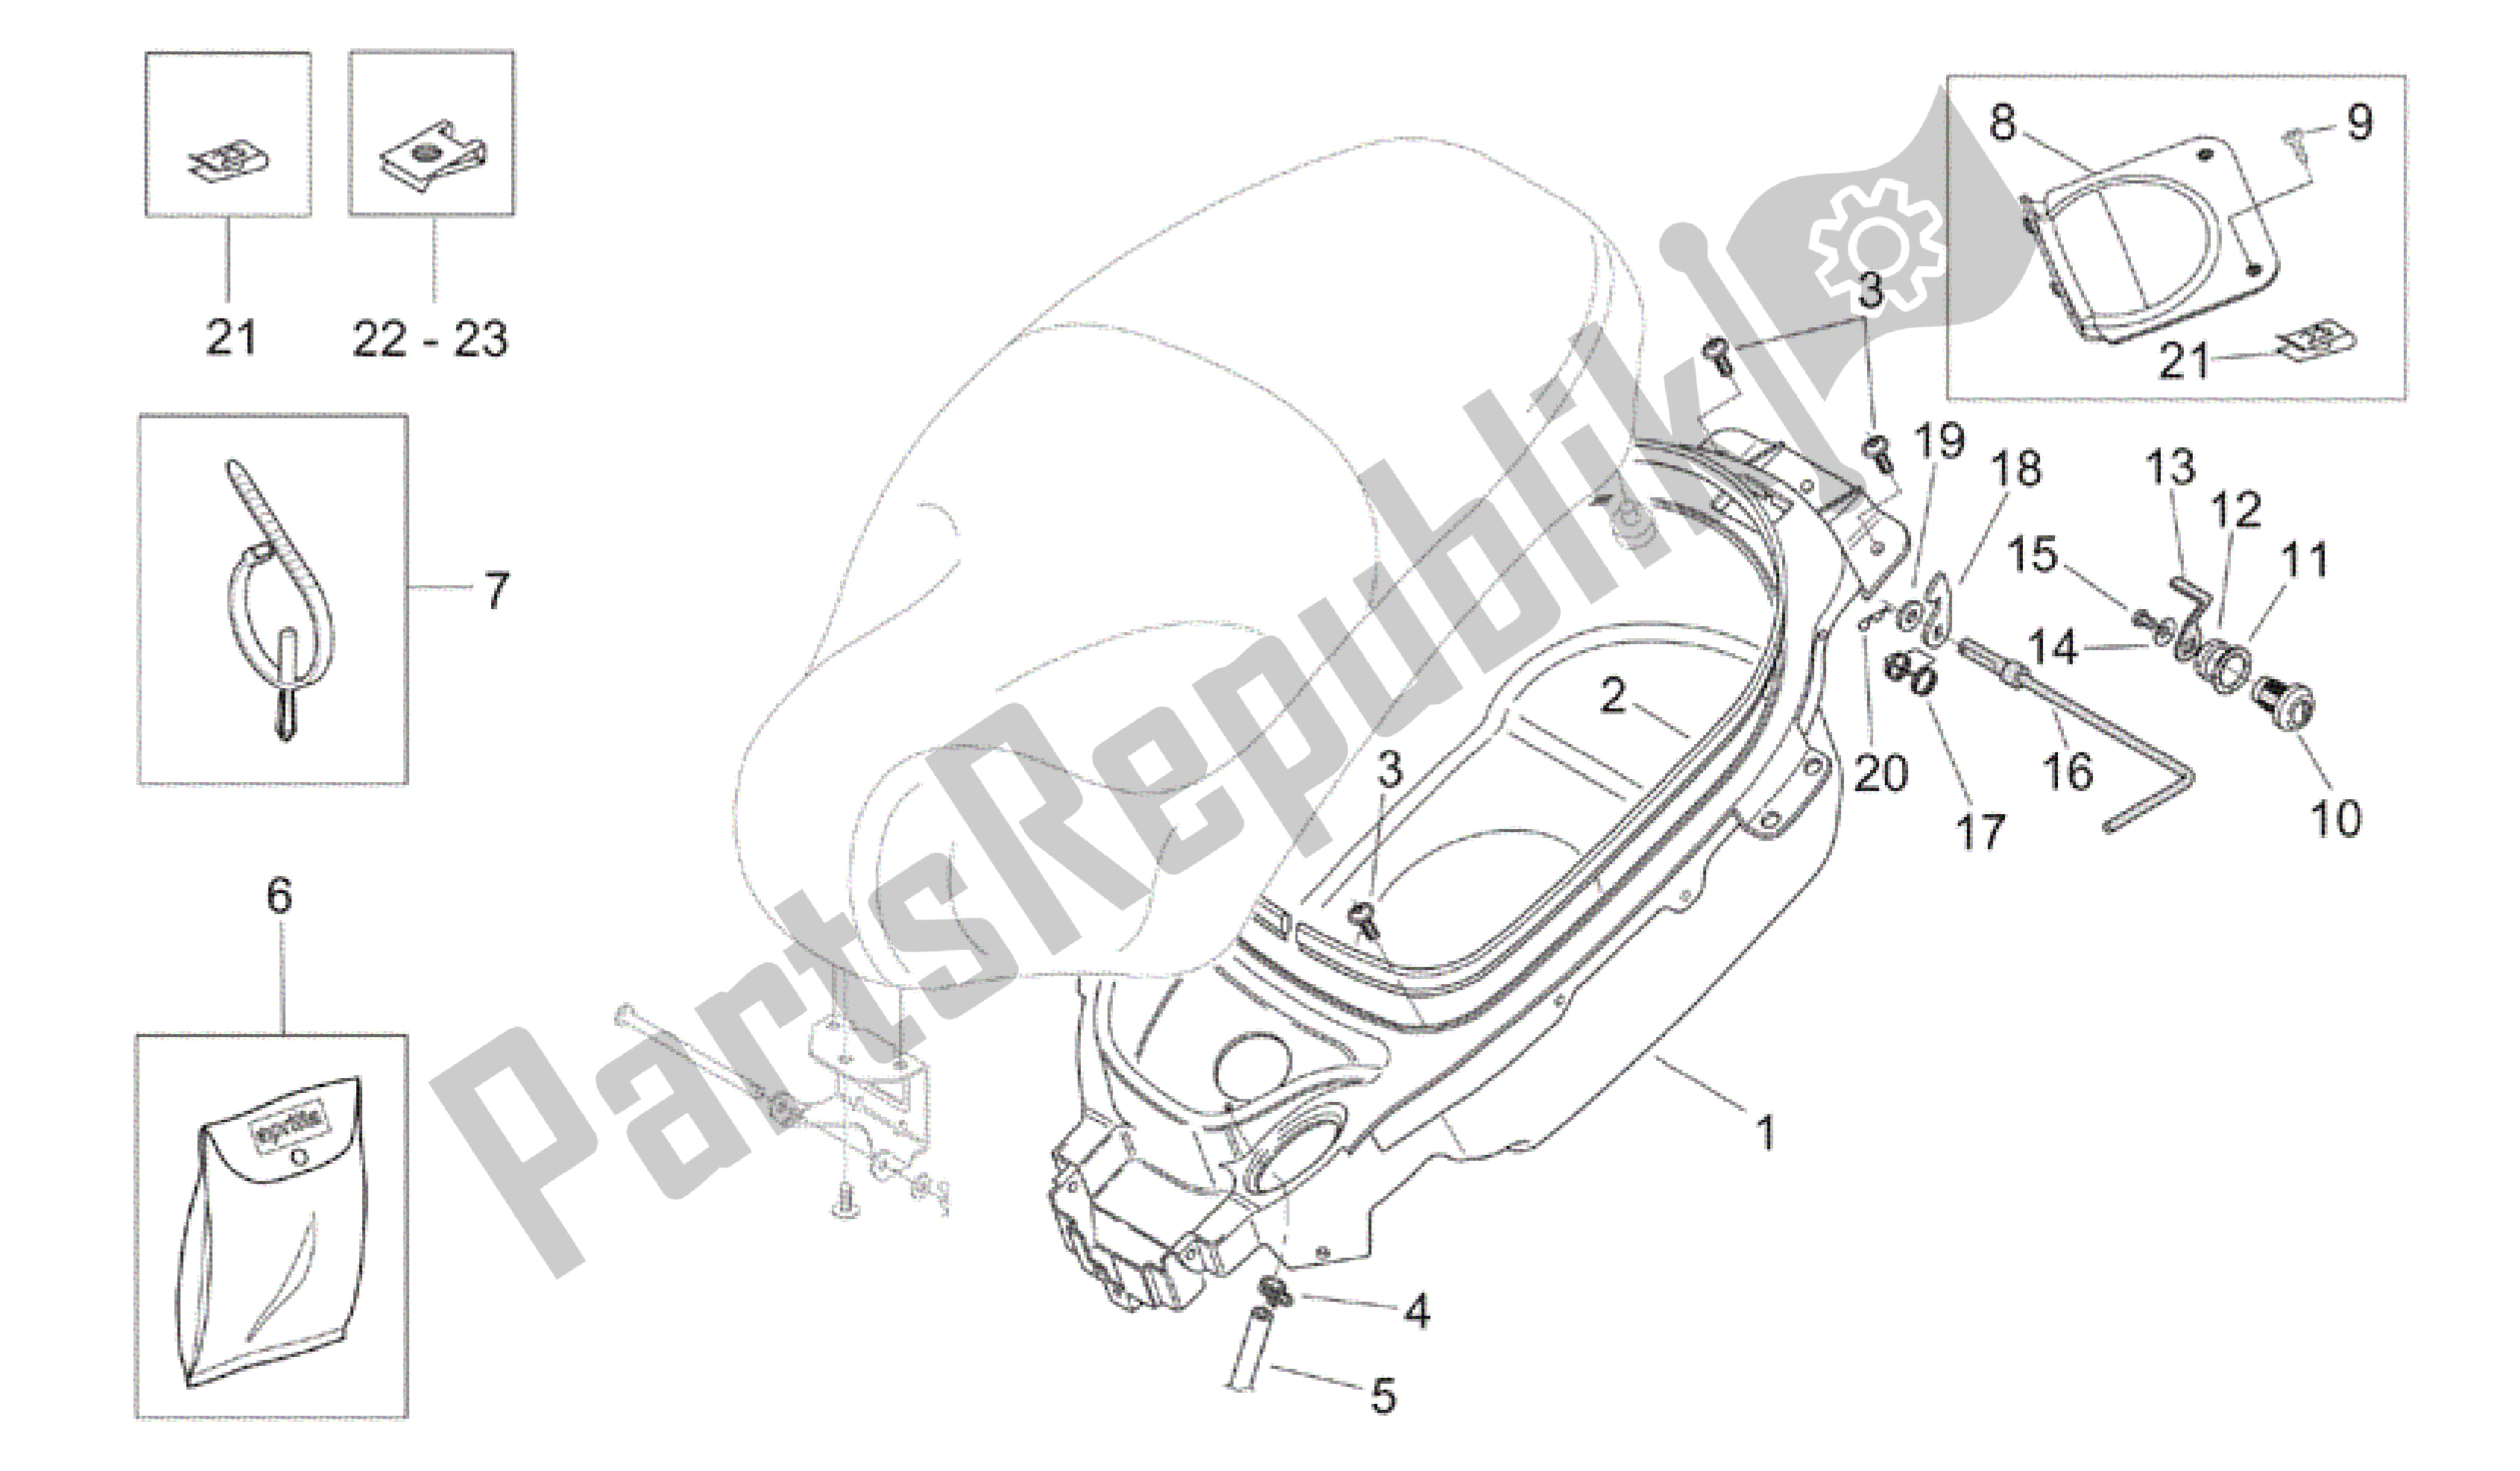 All parts for the Helmet Compartment of the Aprilia Mojito 125 2003 - 2007